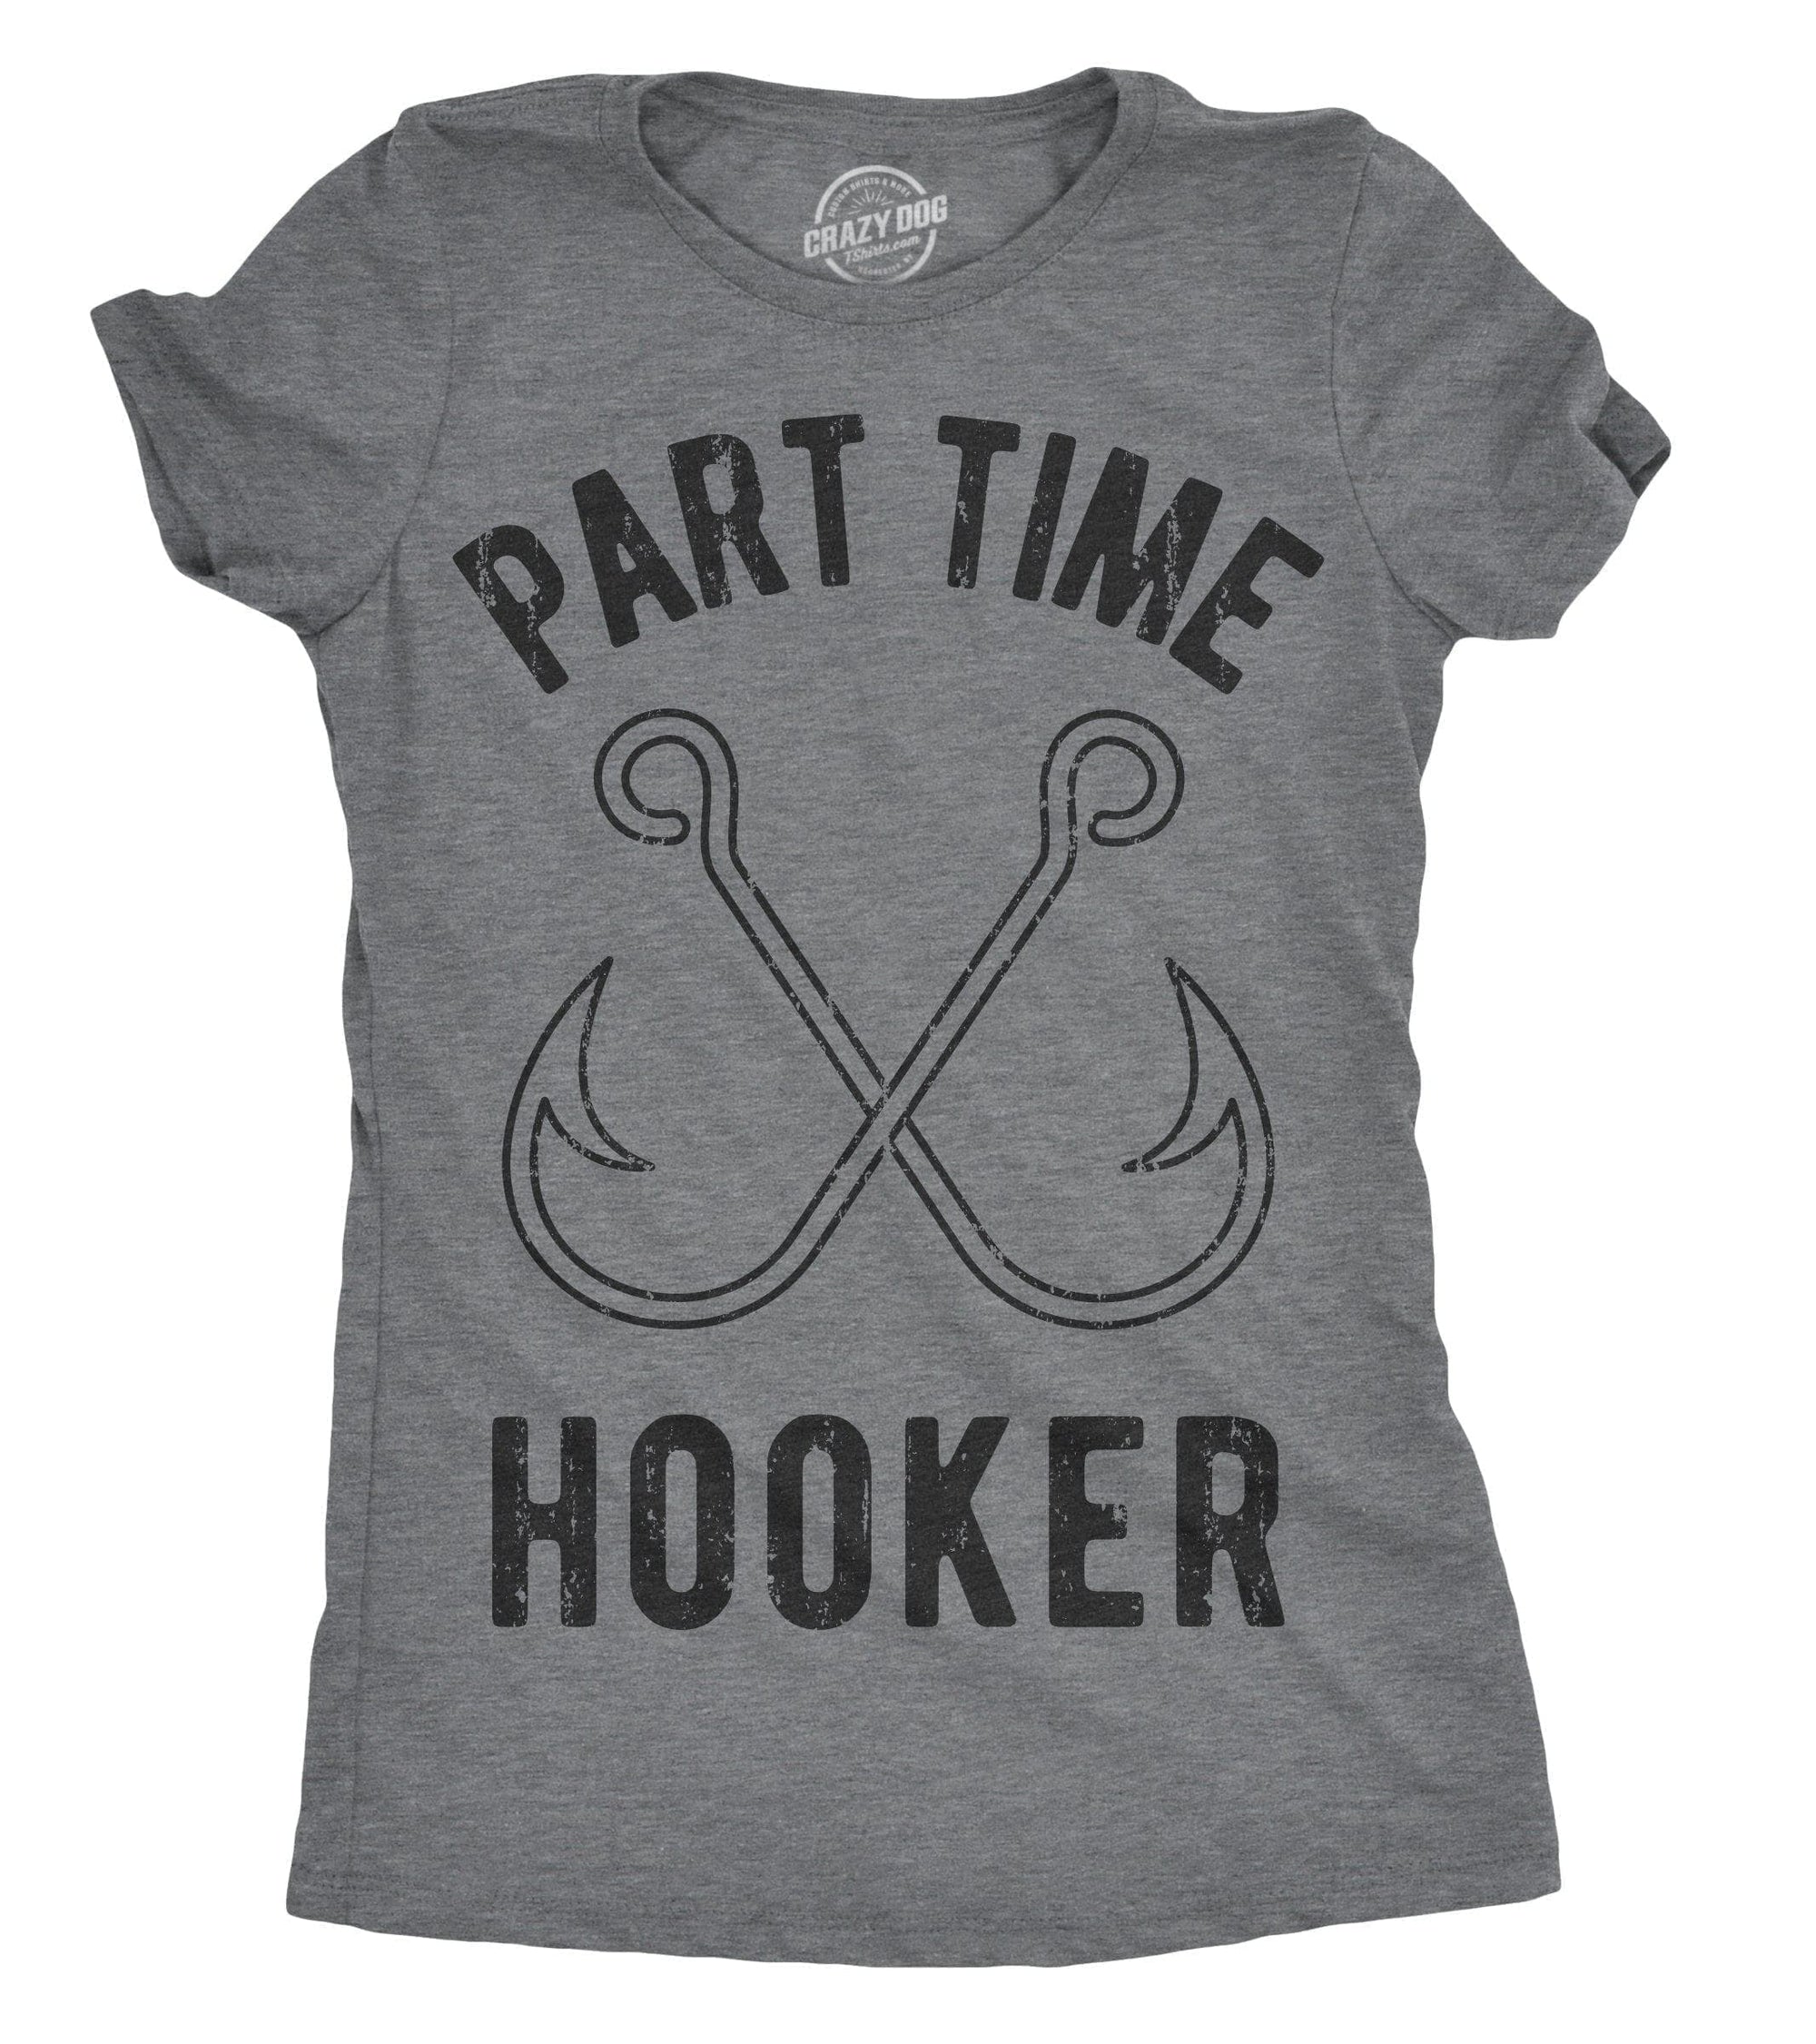 Weekend Hooker Shirt, Fishing Shirt, Women That Fish Shirt